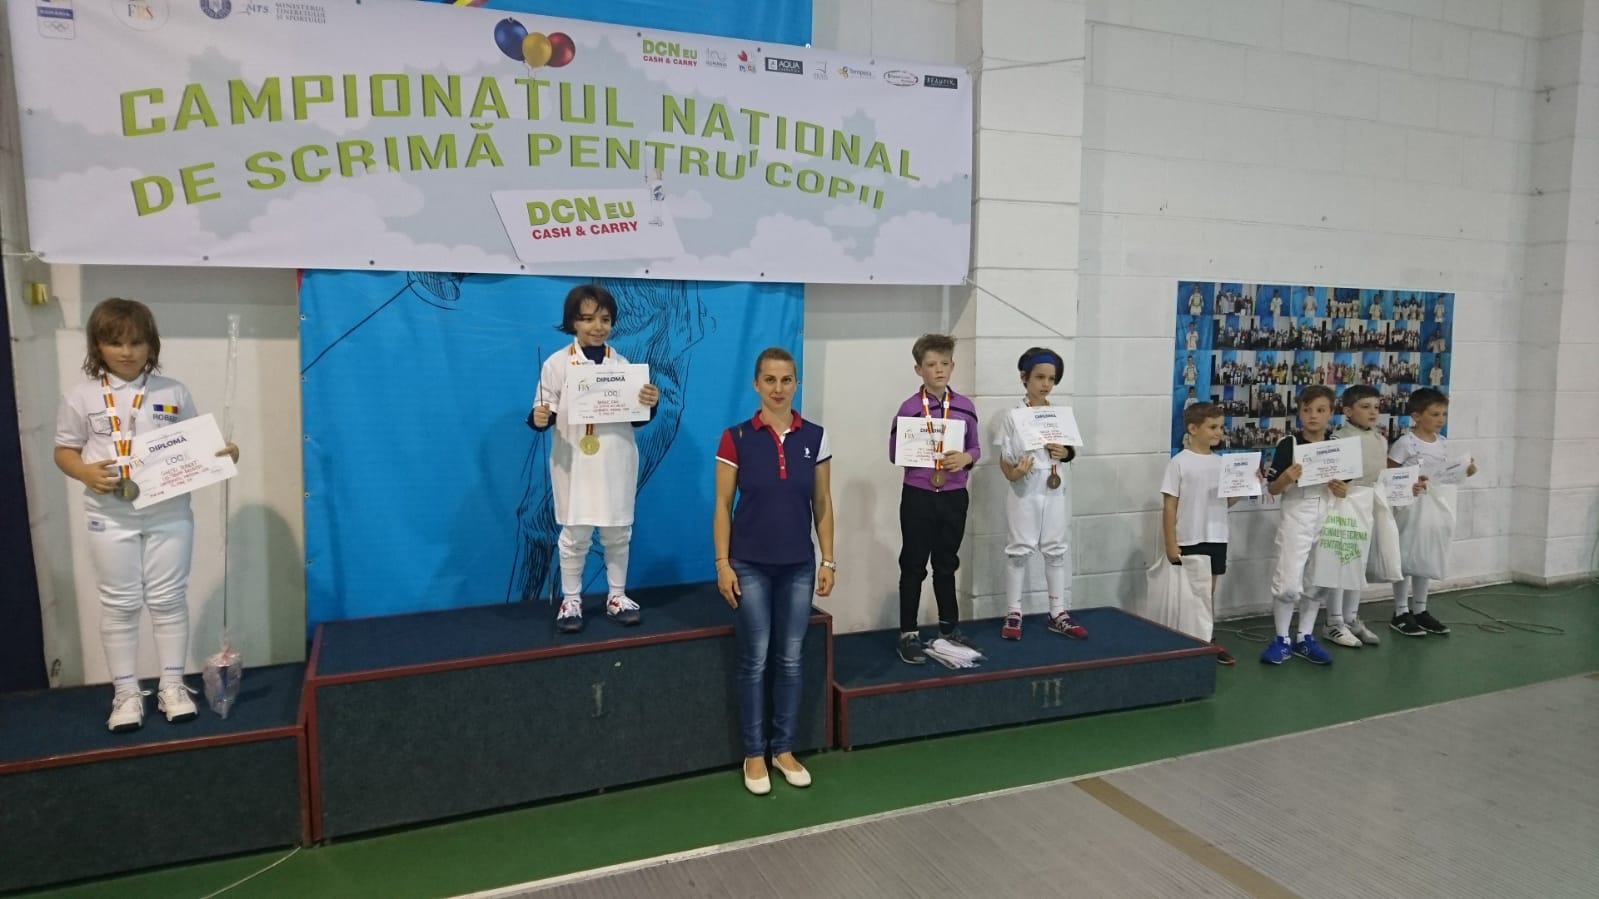 Campionatul Național de scrimă pentru copii, ediția 2018, ziua 6, proba 11: floretă masculin 8-9 ani